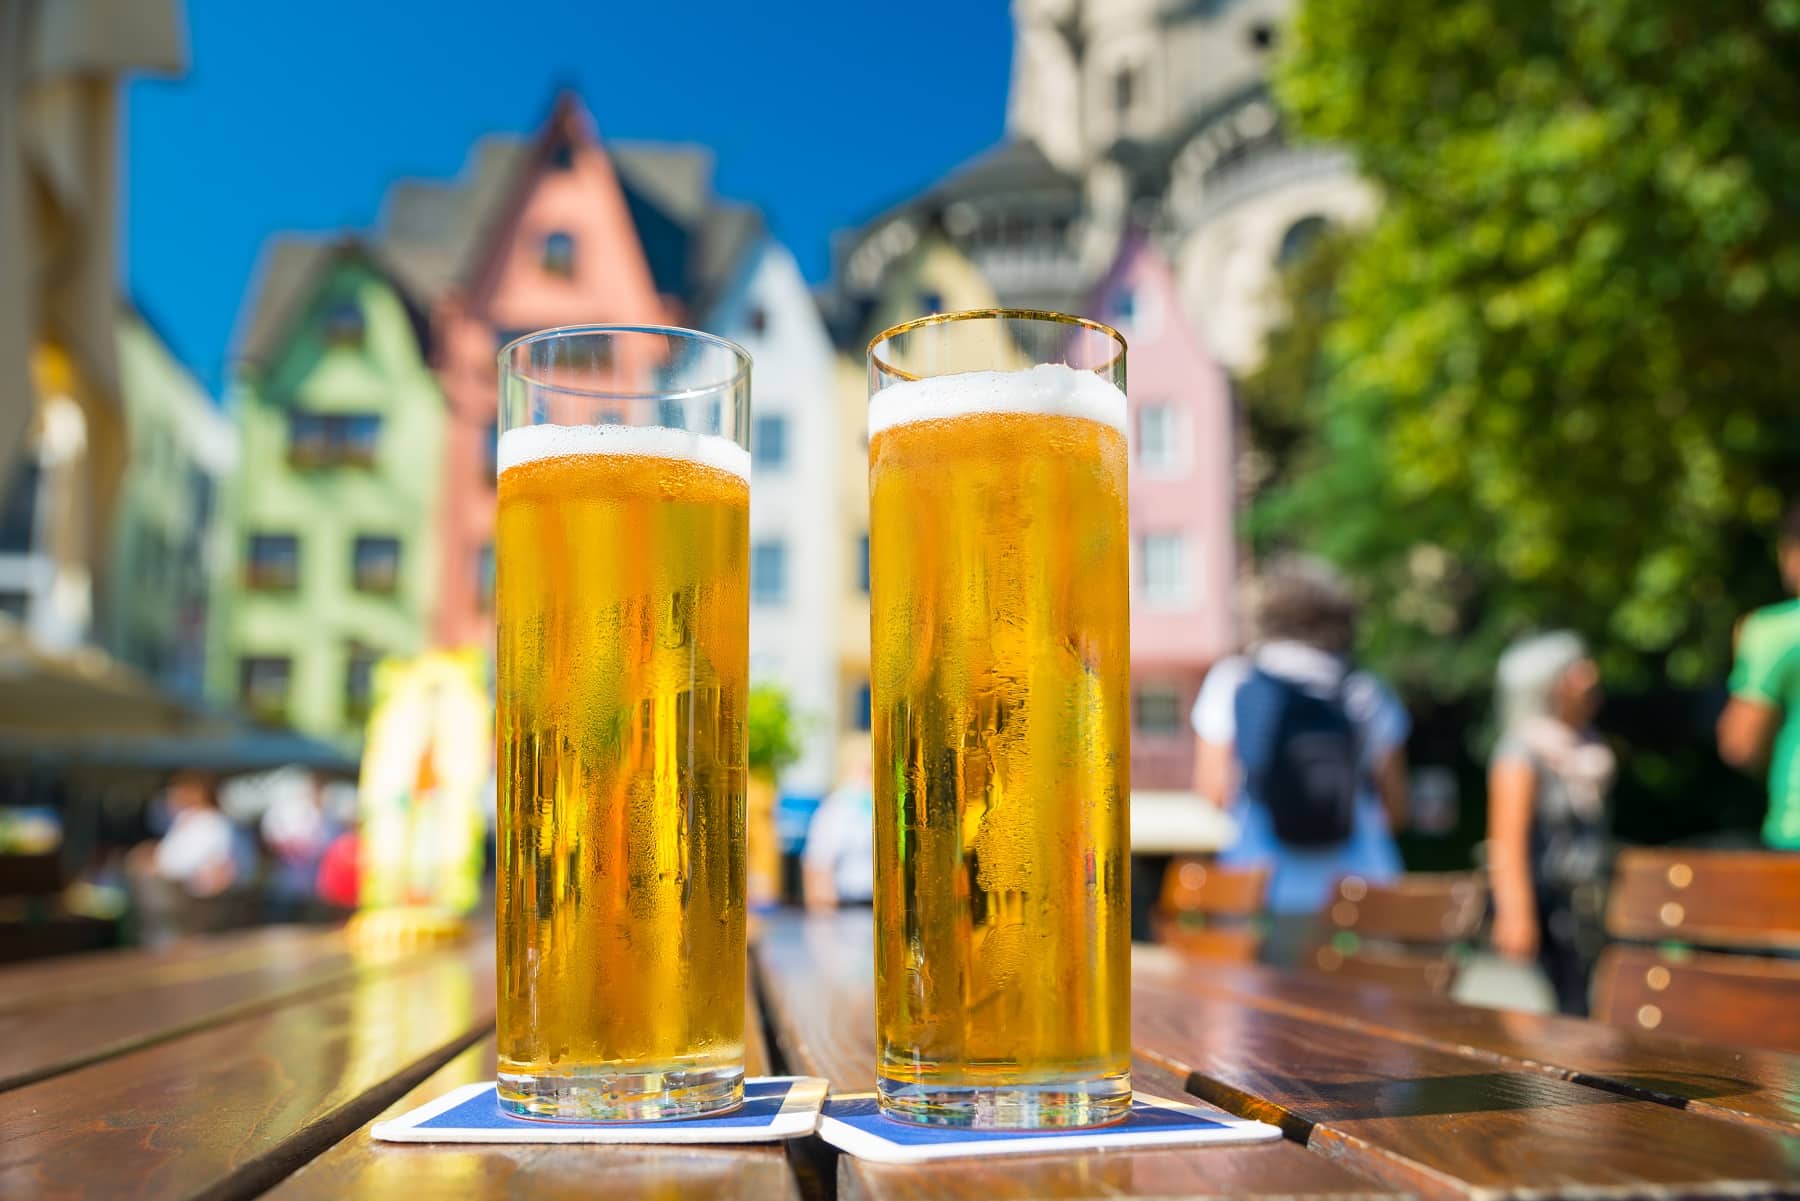 Kölner Bierbörse: Zwei Kölsch auf einem Biergartentisch, im Hintergrund unscharf die bunten Häuserfassaden am Rheinufer.